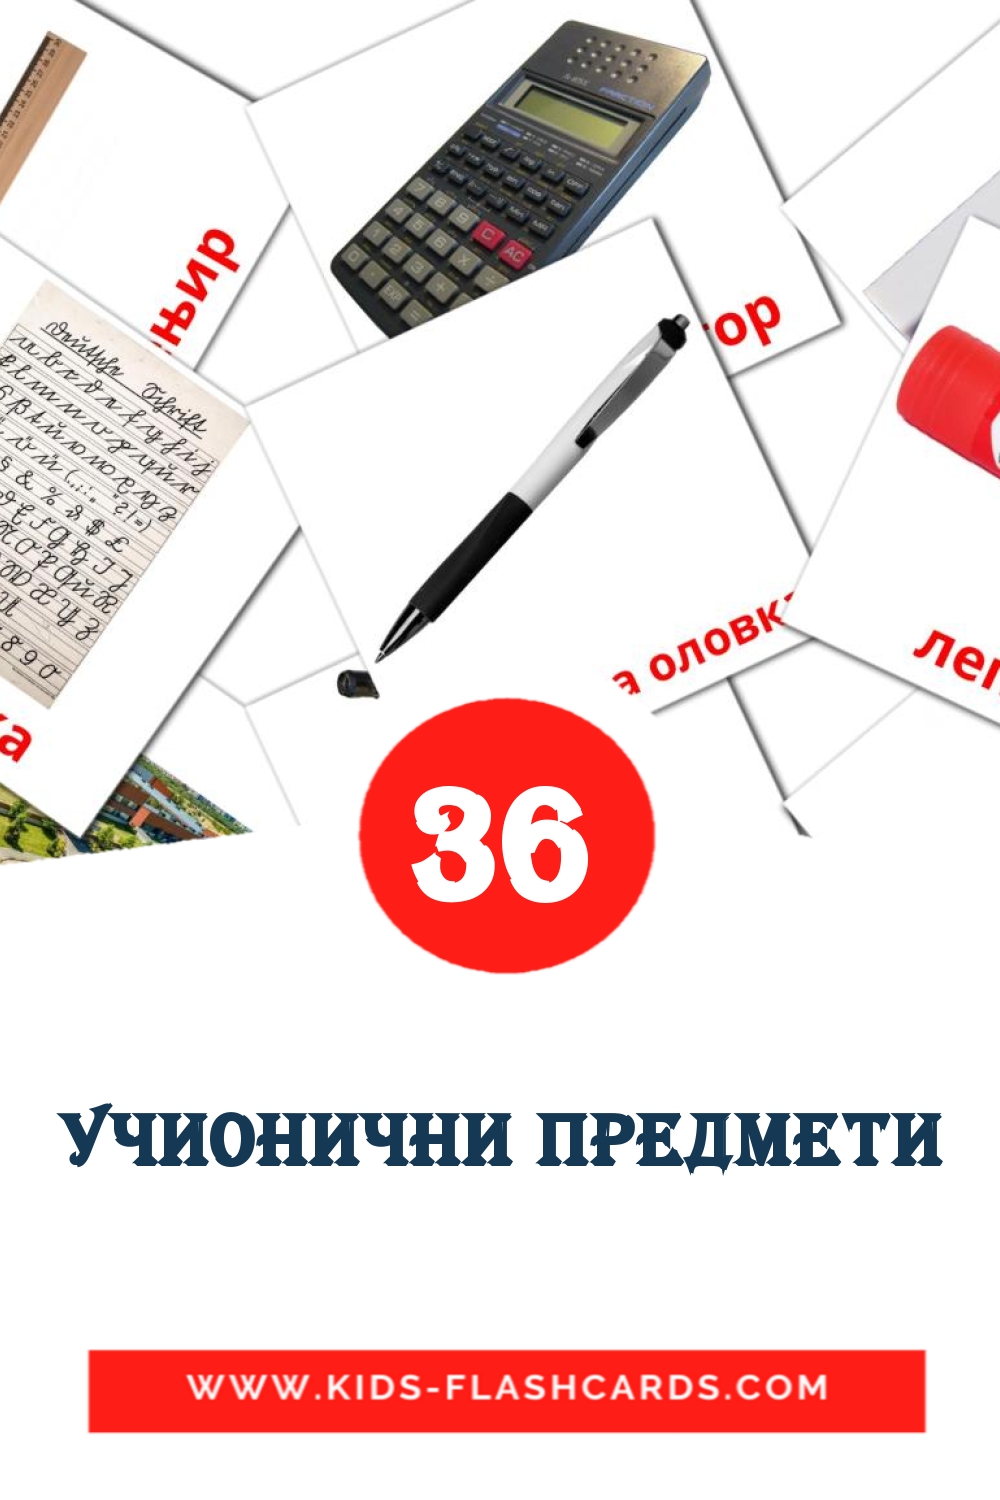 36 tarjetas didacticas de Учионични предмети para el jardín de infancia en serbio(cirílico)